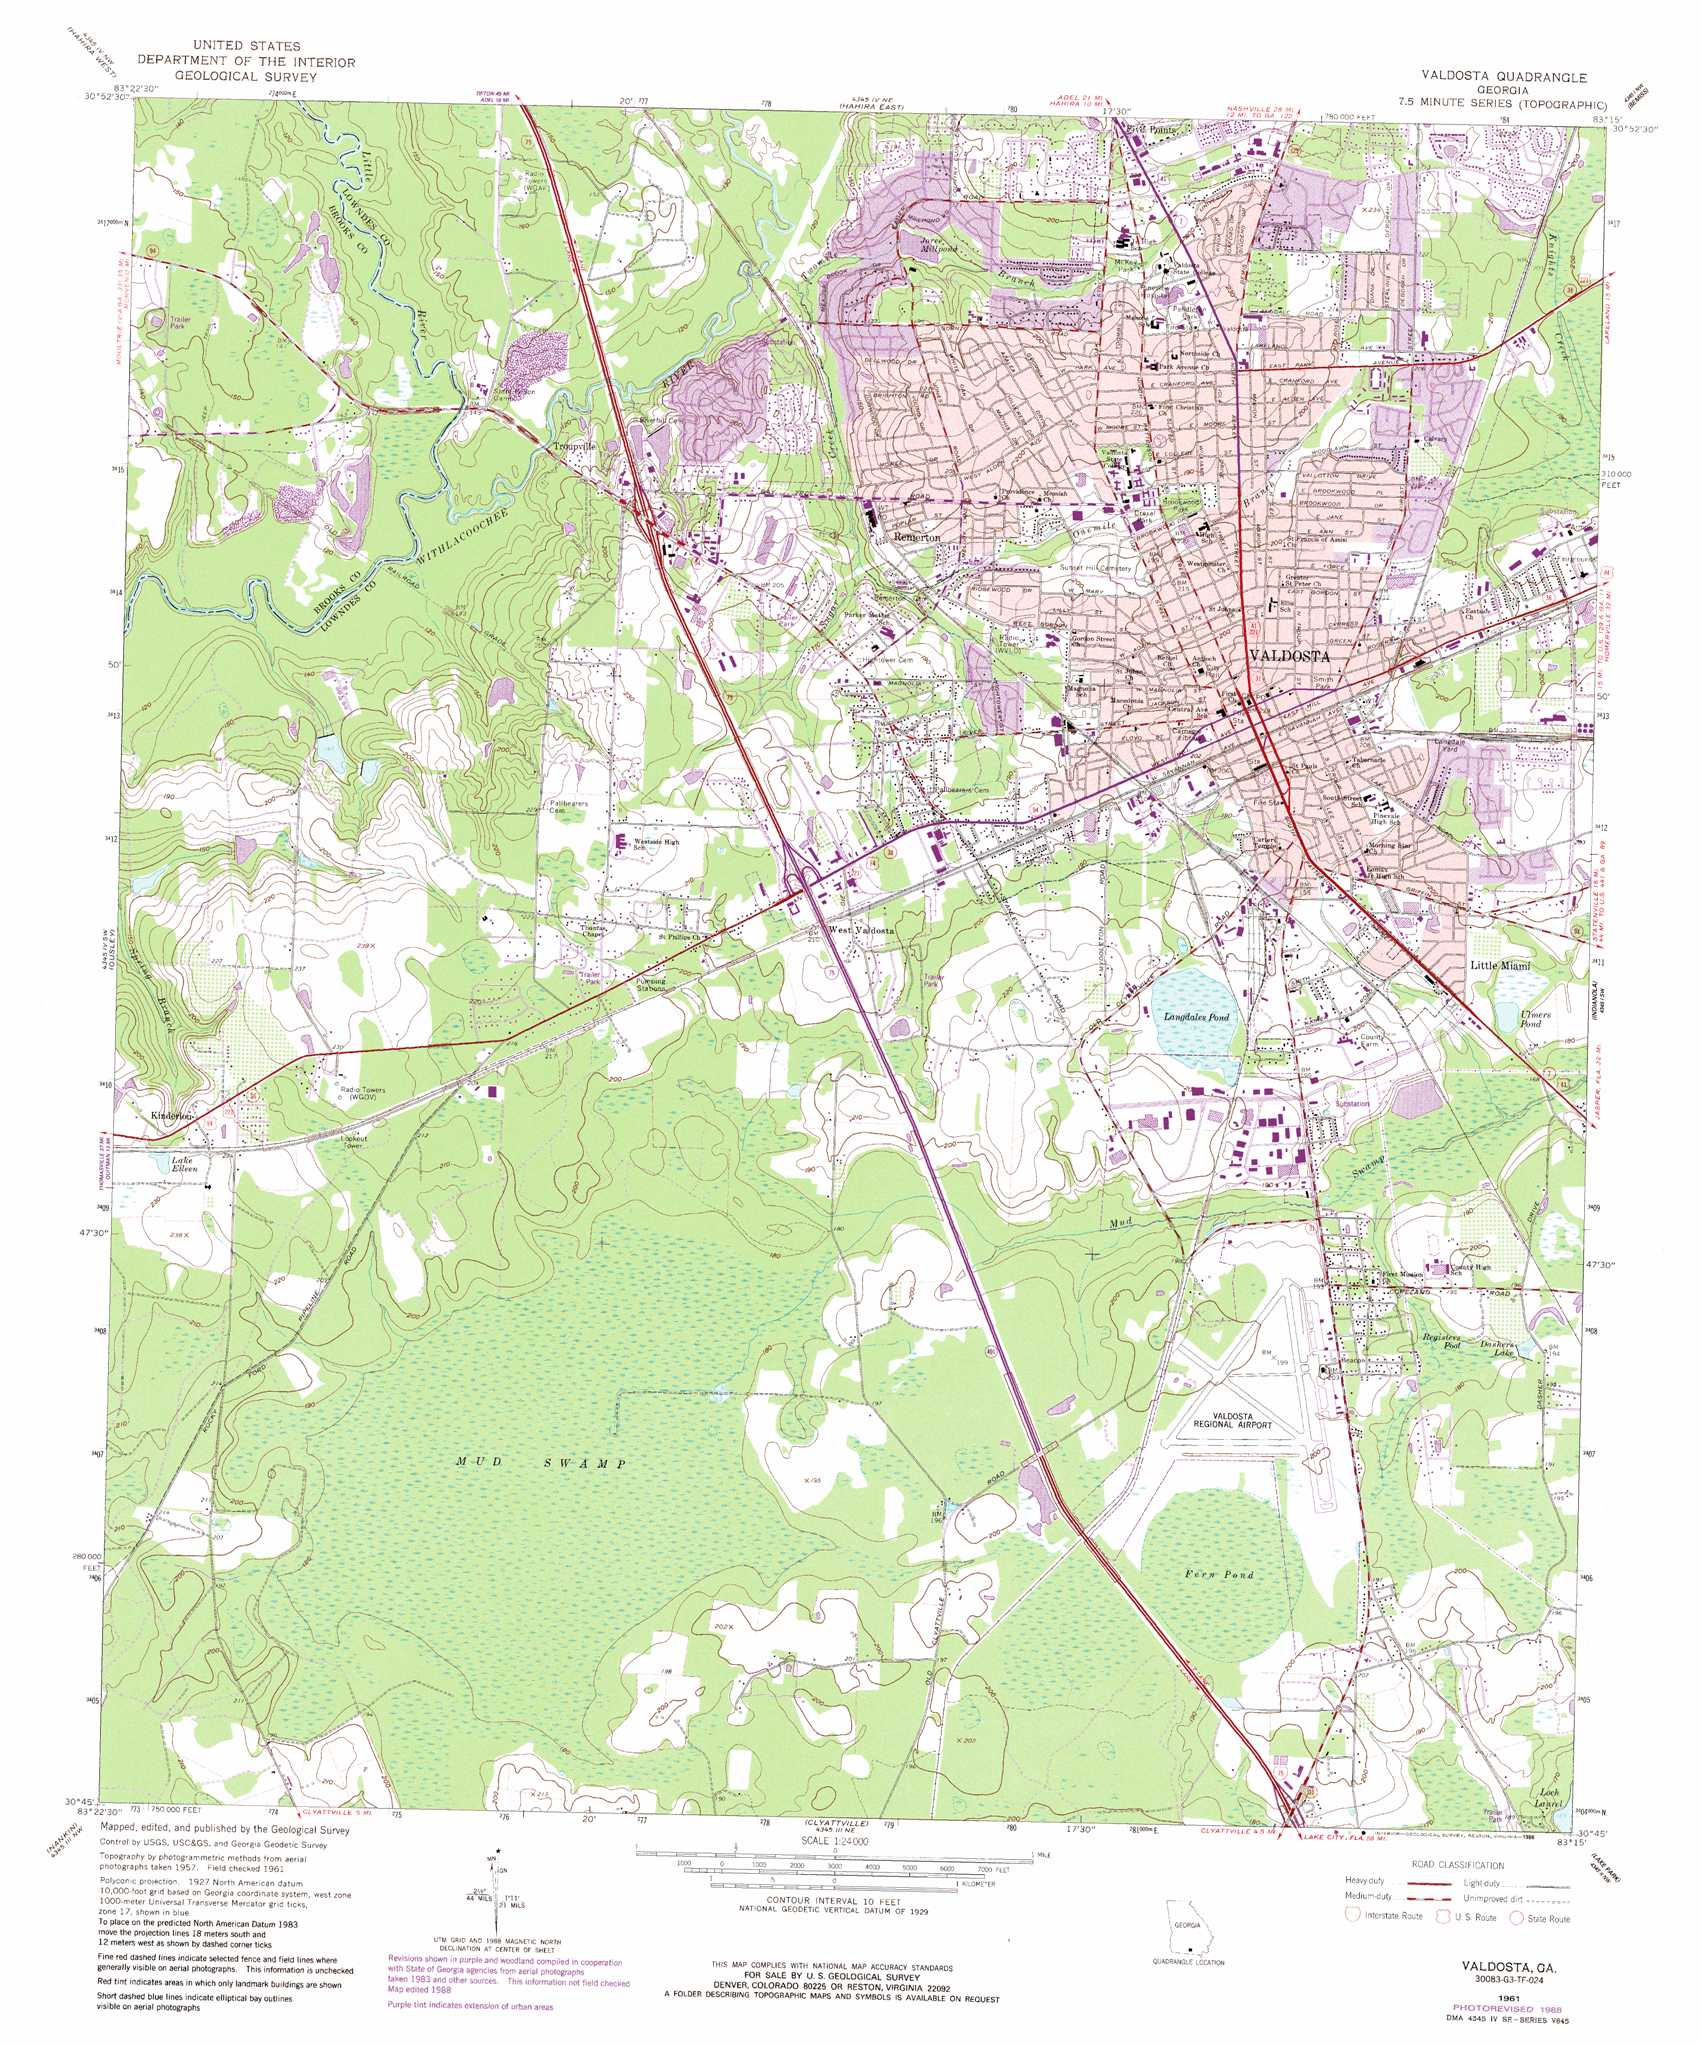 Valdosta topographic map, GA - USGS Topo Quad 30083g3